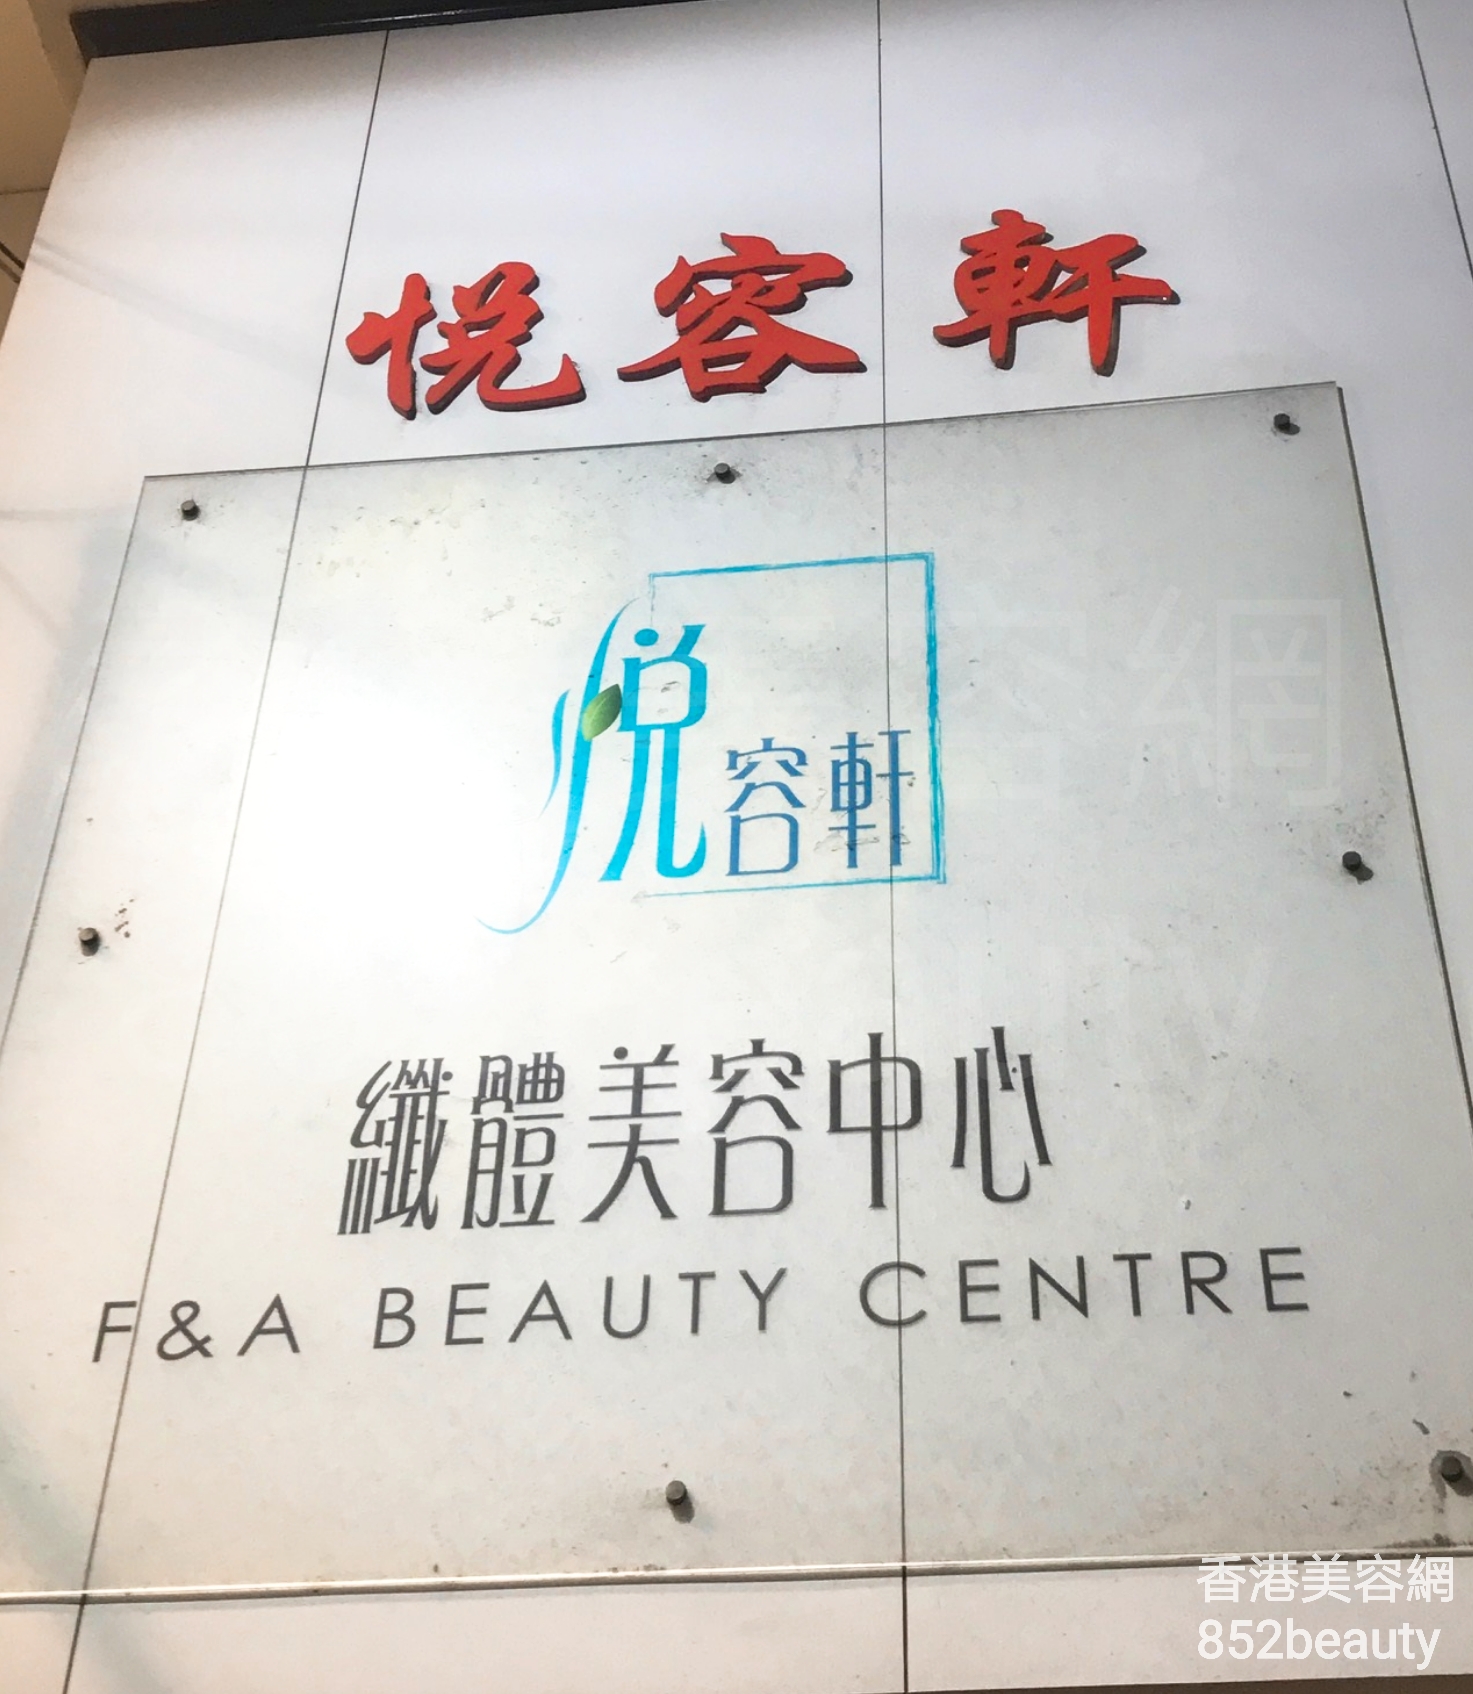 Facial Care: 悅容軒